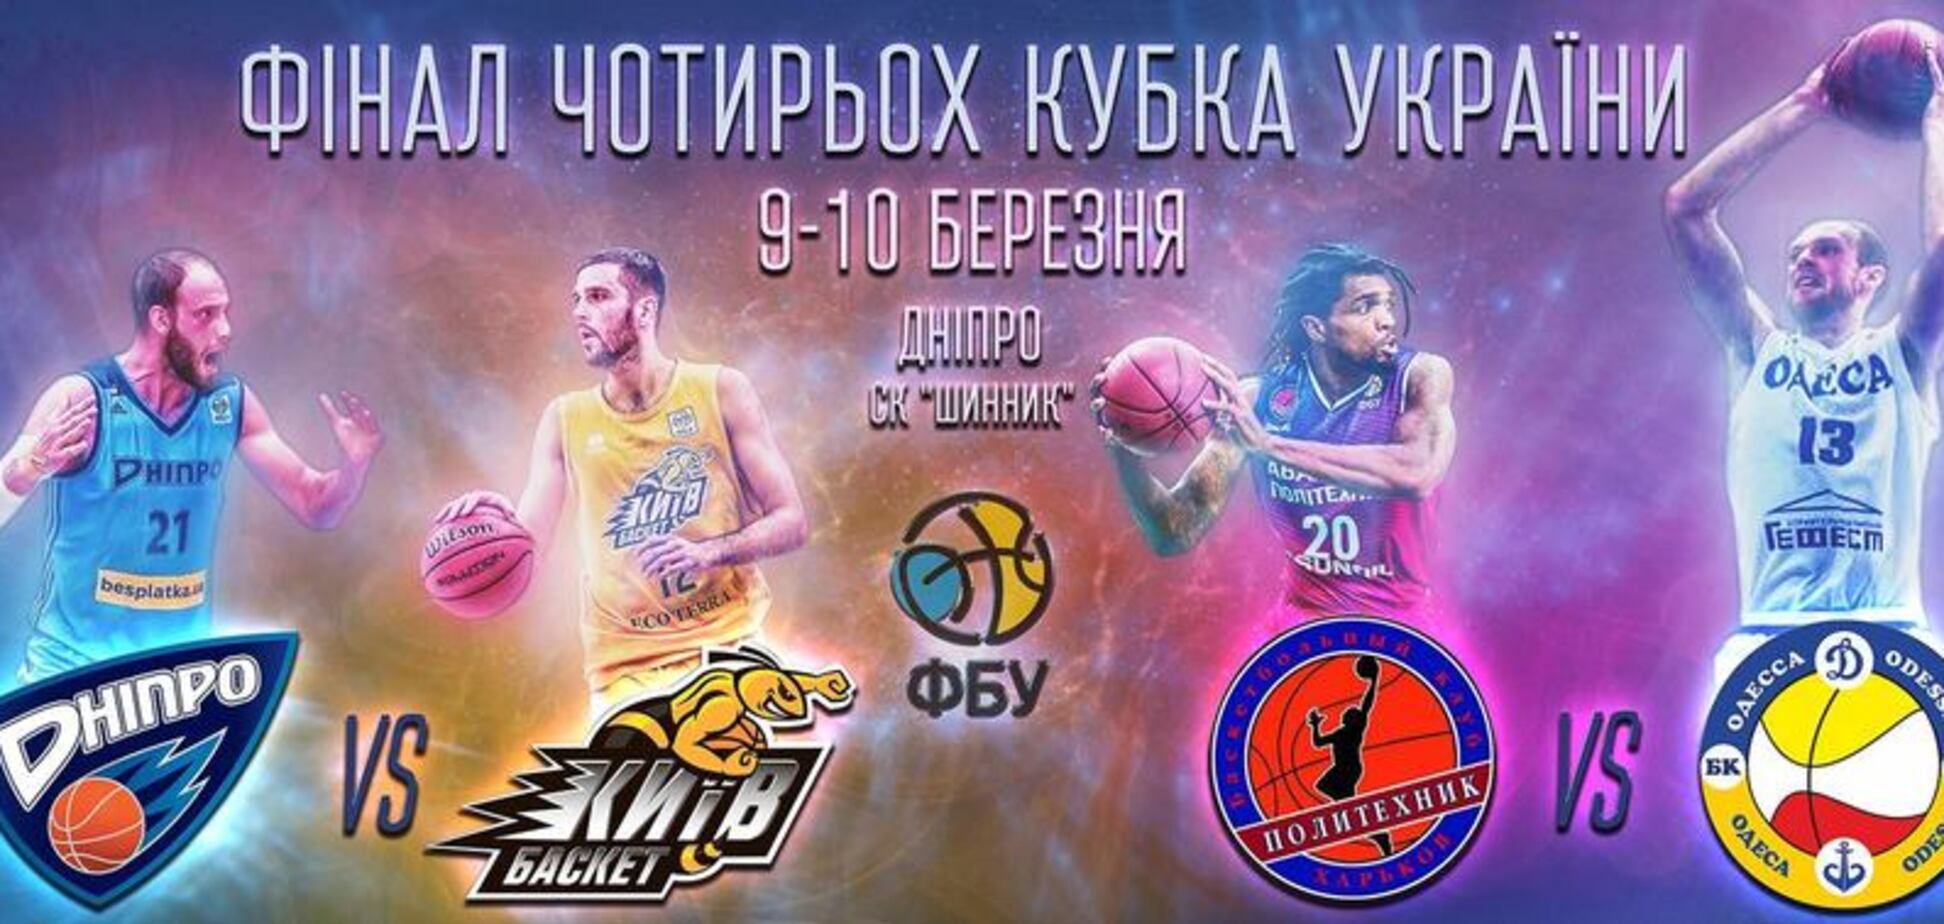 Появилось эффектное промо Финала четырех Кубка Украины по баскетболу